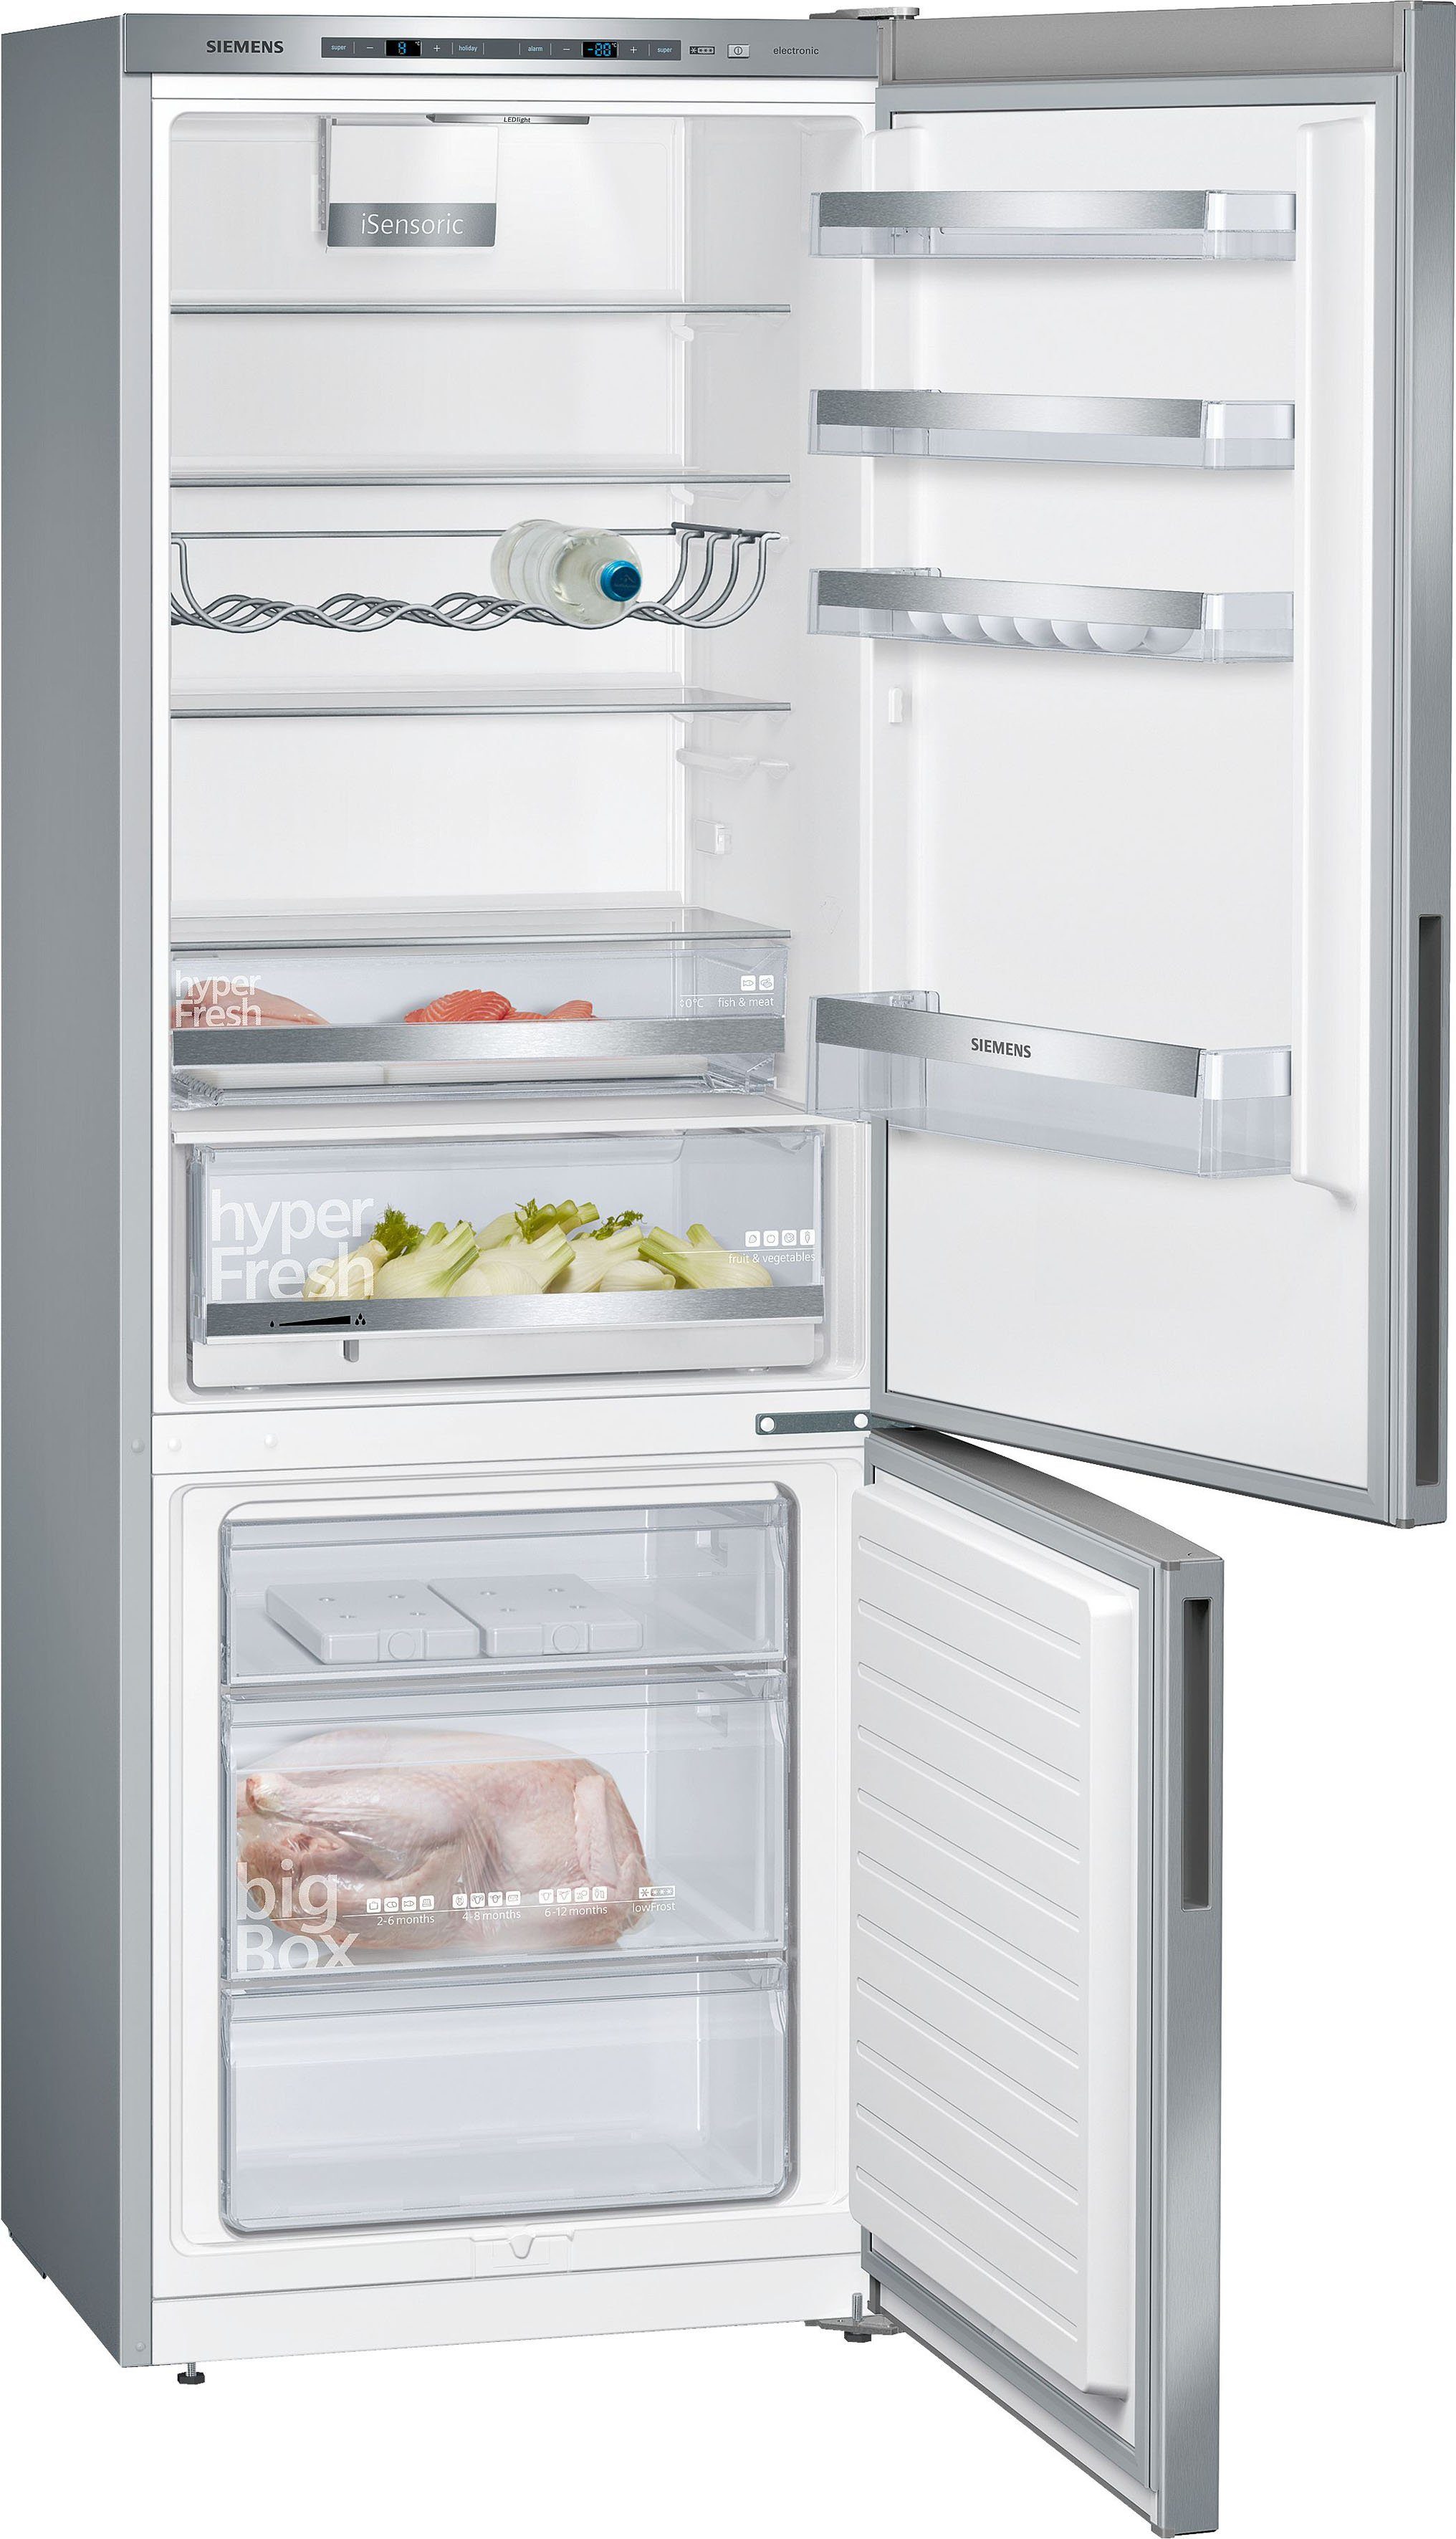 SIEMENS Kühl-/Gefrierkombination KG49EAICA, 201 cm hoch, 70 cm breit,  Beleuchtet den Kühlschrank für einen guten Überblick